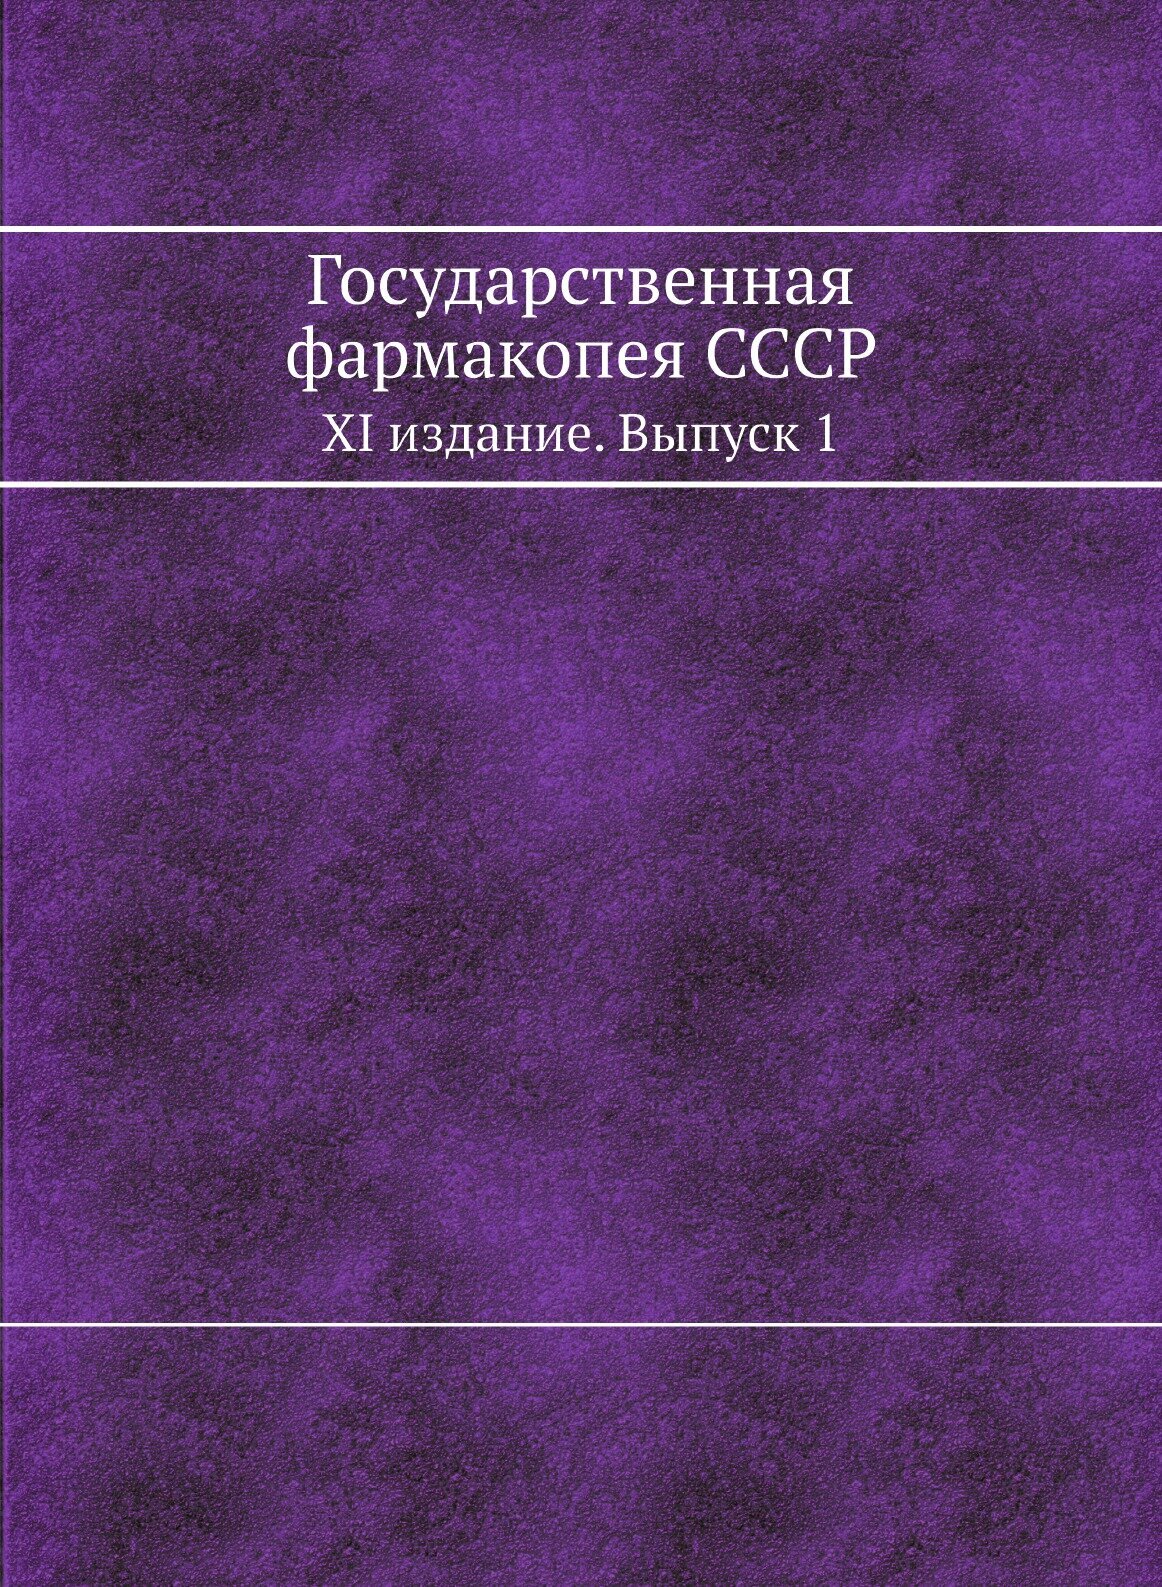 Государственная фармакопея СССР. XI издание. Выпуск 1 - фото №1